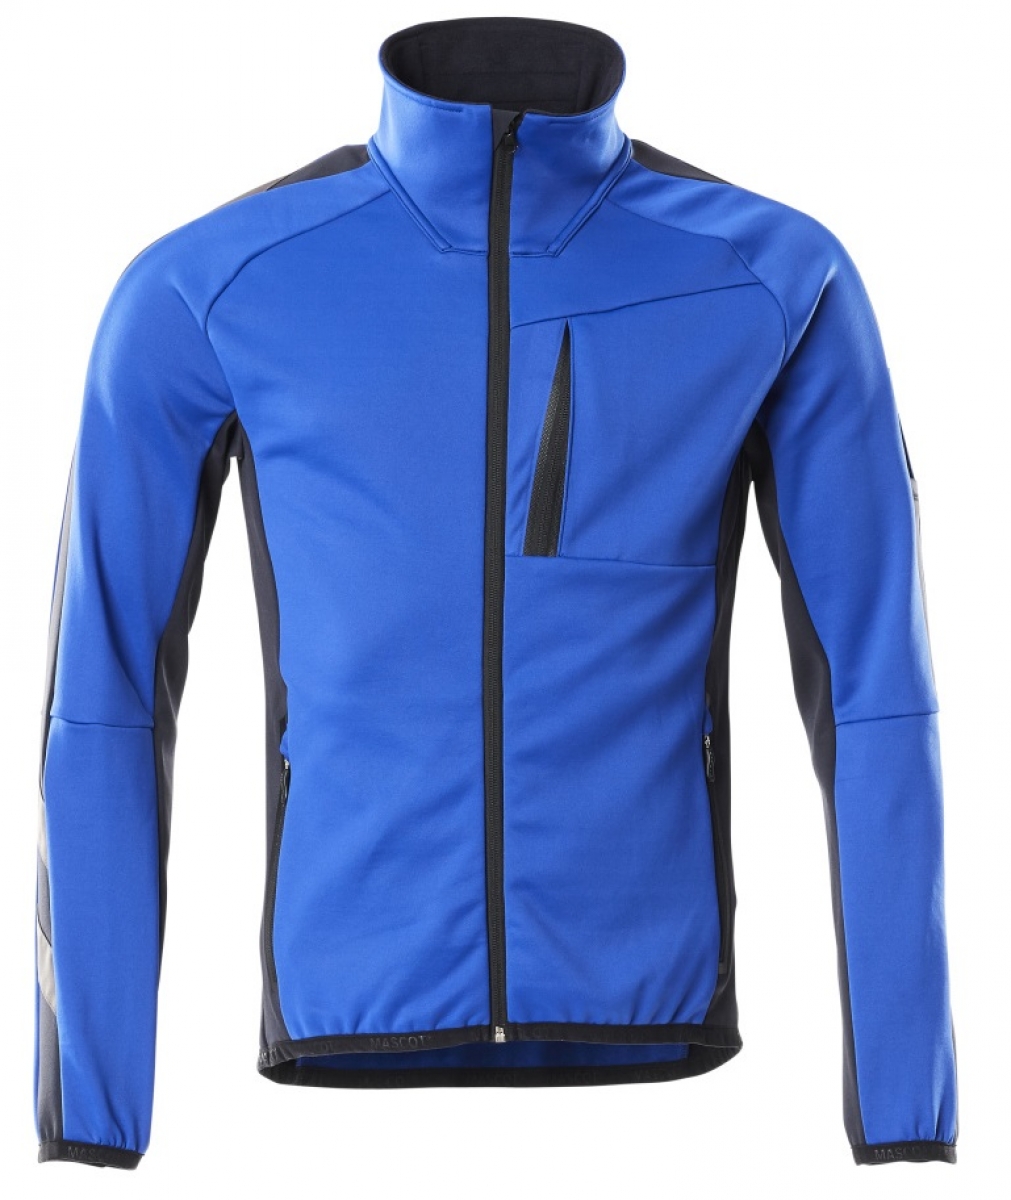 MASCOT-Workwear, Klteschutz, Fleecepullover mit Reiverschlu, 260 g/m, kornblau/schwarzblau